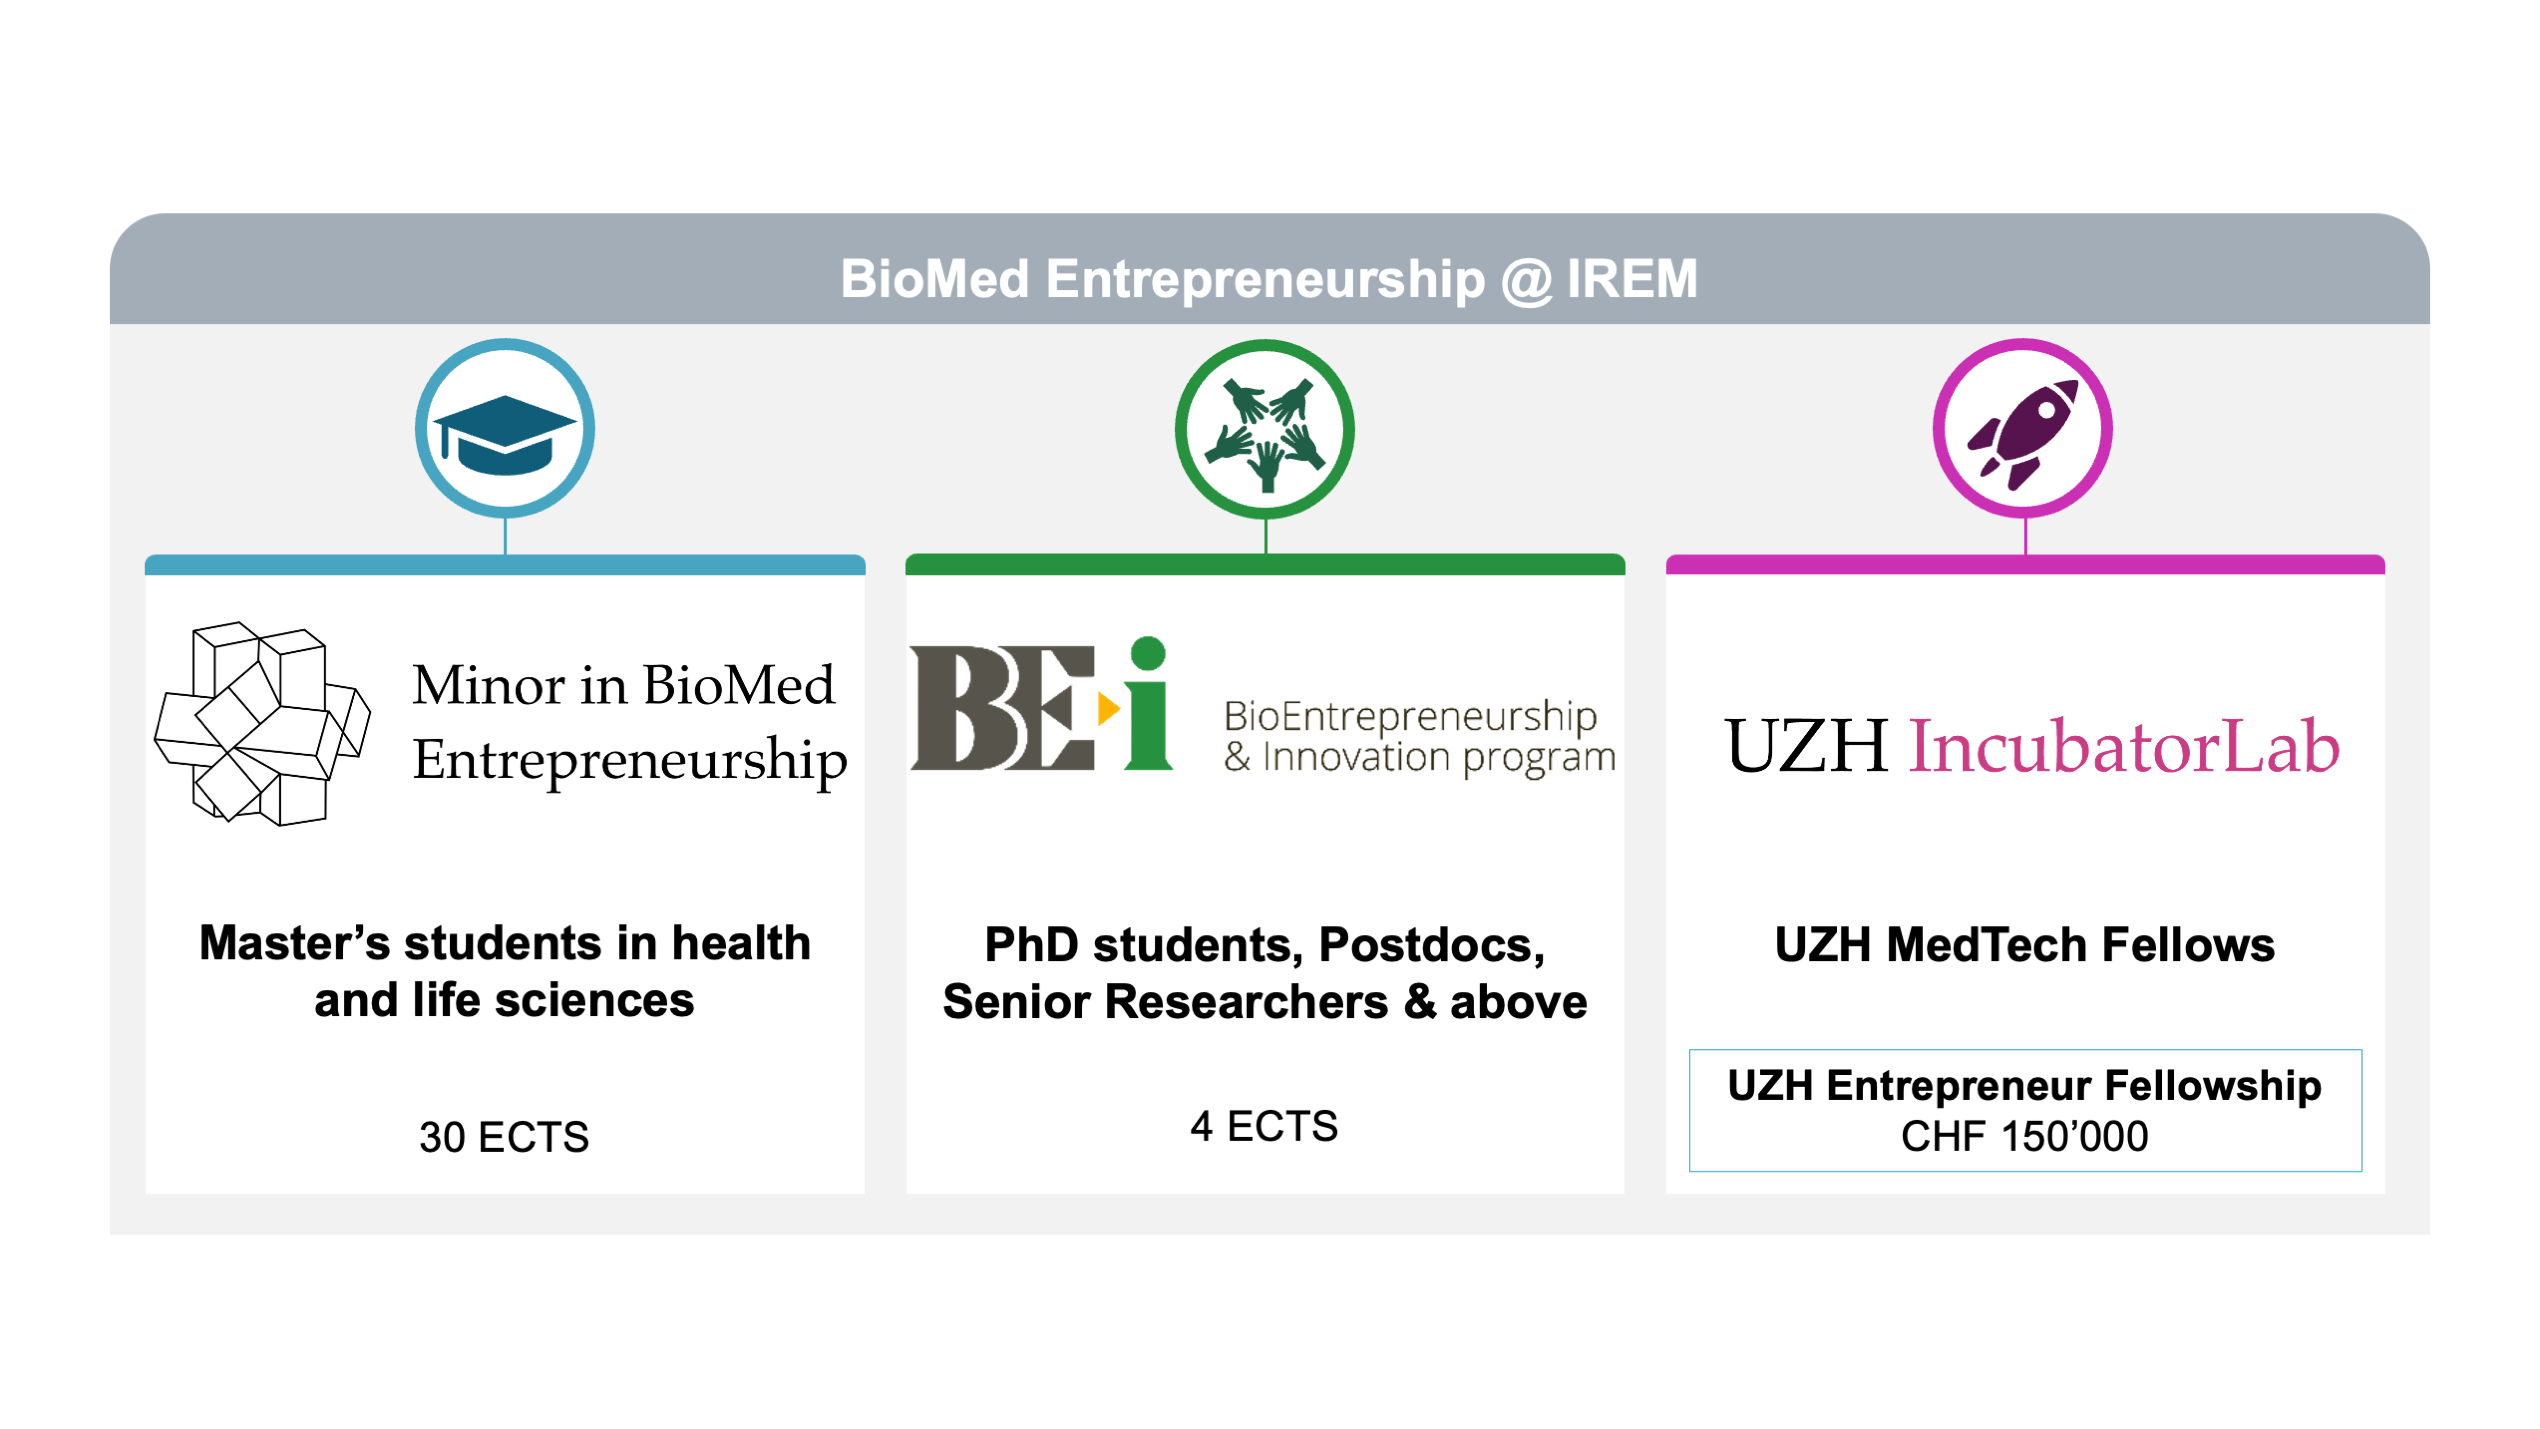 BioMed Entrepreneurship